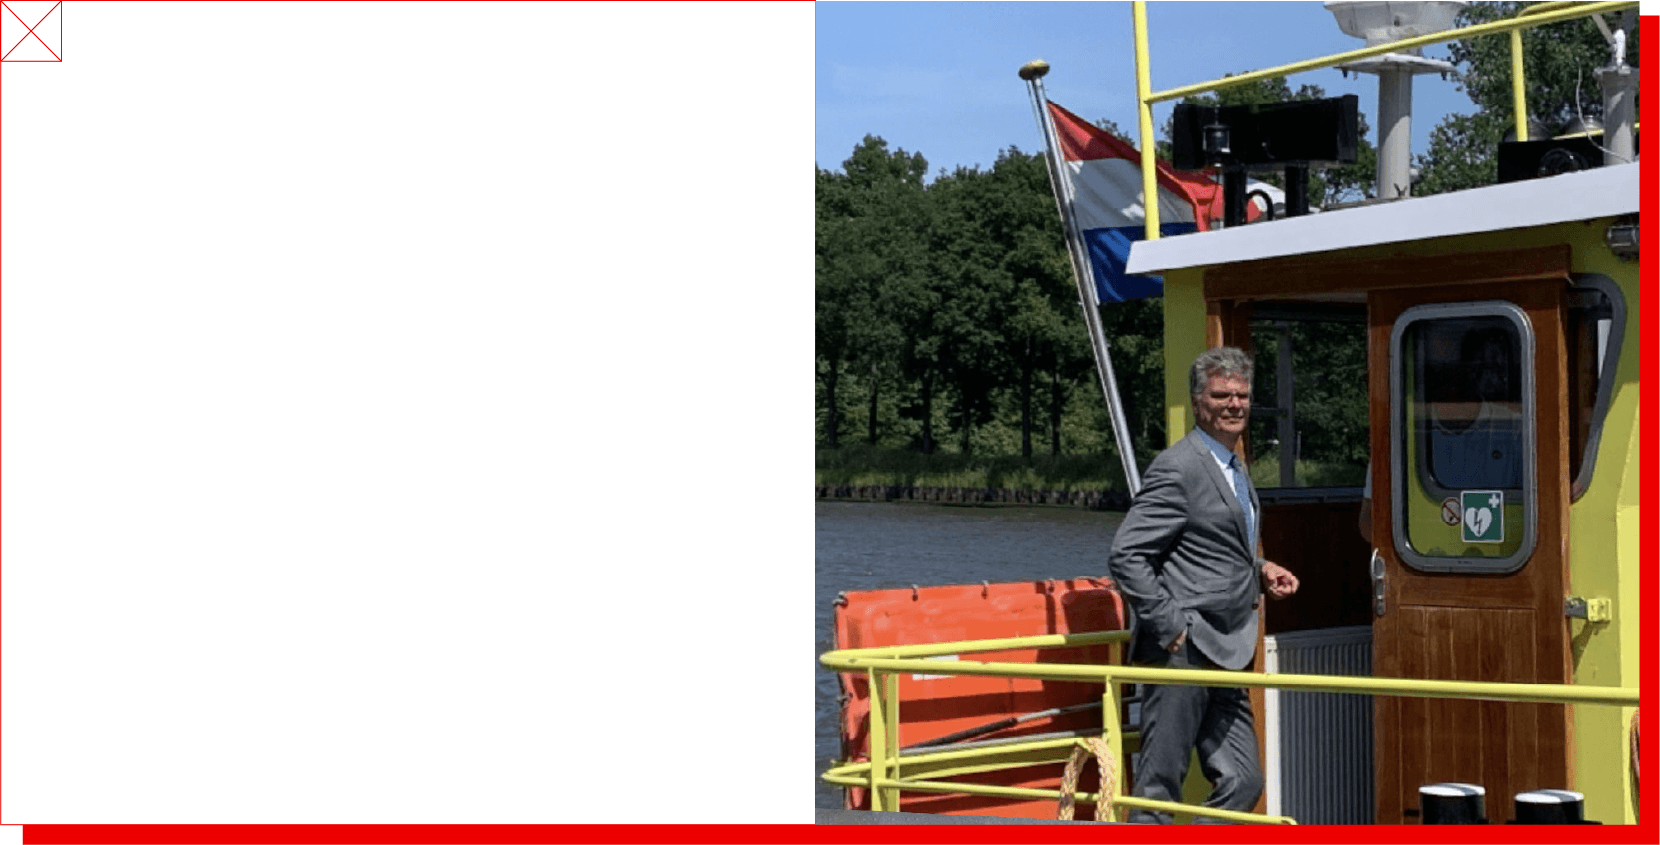 De commissaris aan boord van een schip tijdens zijn boottocht over het Amsterdam-Rijnkanaal